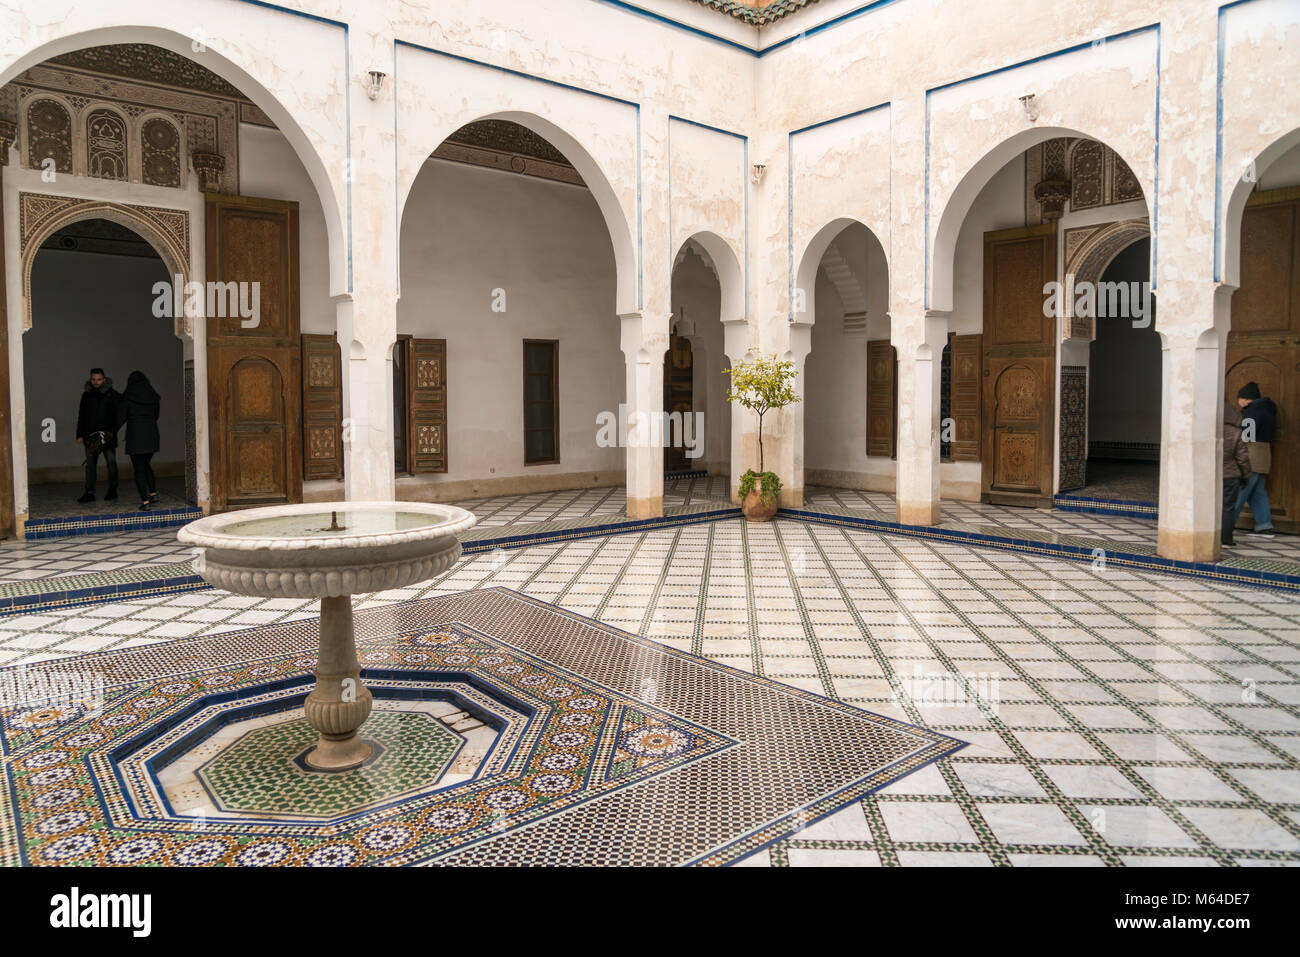 Innenhof mit Zürich im Palast von Bahia, Königreich Marokko, Afrika | Royaume du Maroc, AfricaMarrakesch, Königreich Marokko, Afrika | Courtyard Banque D'Images